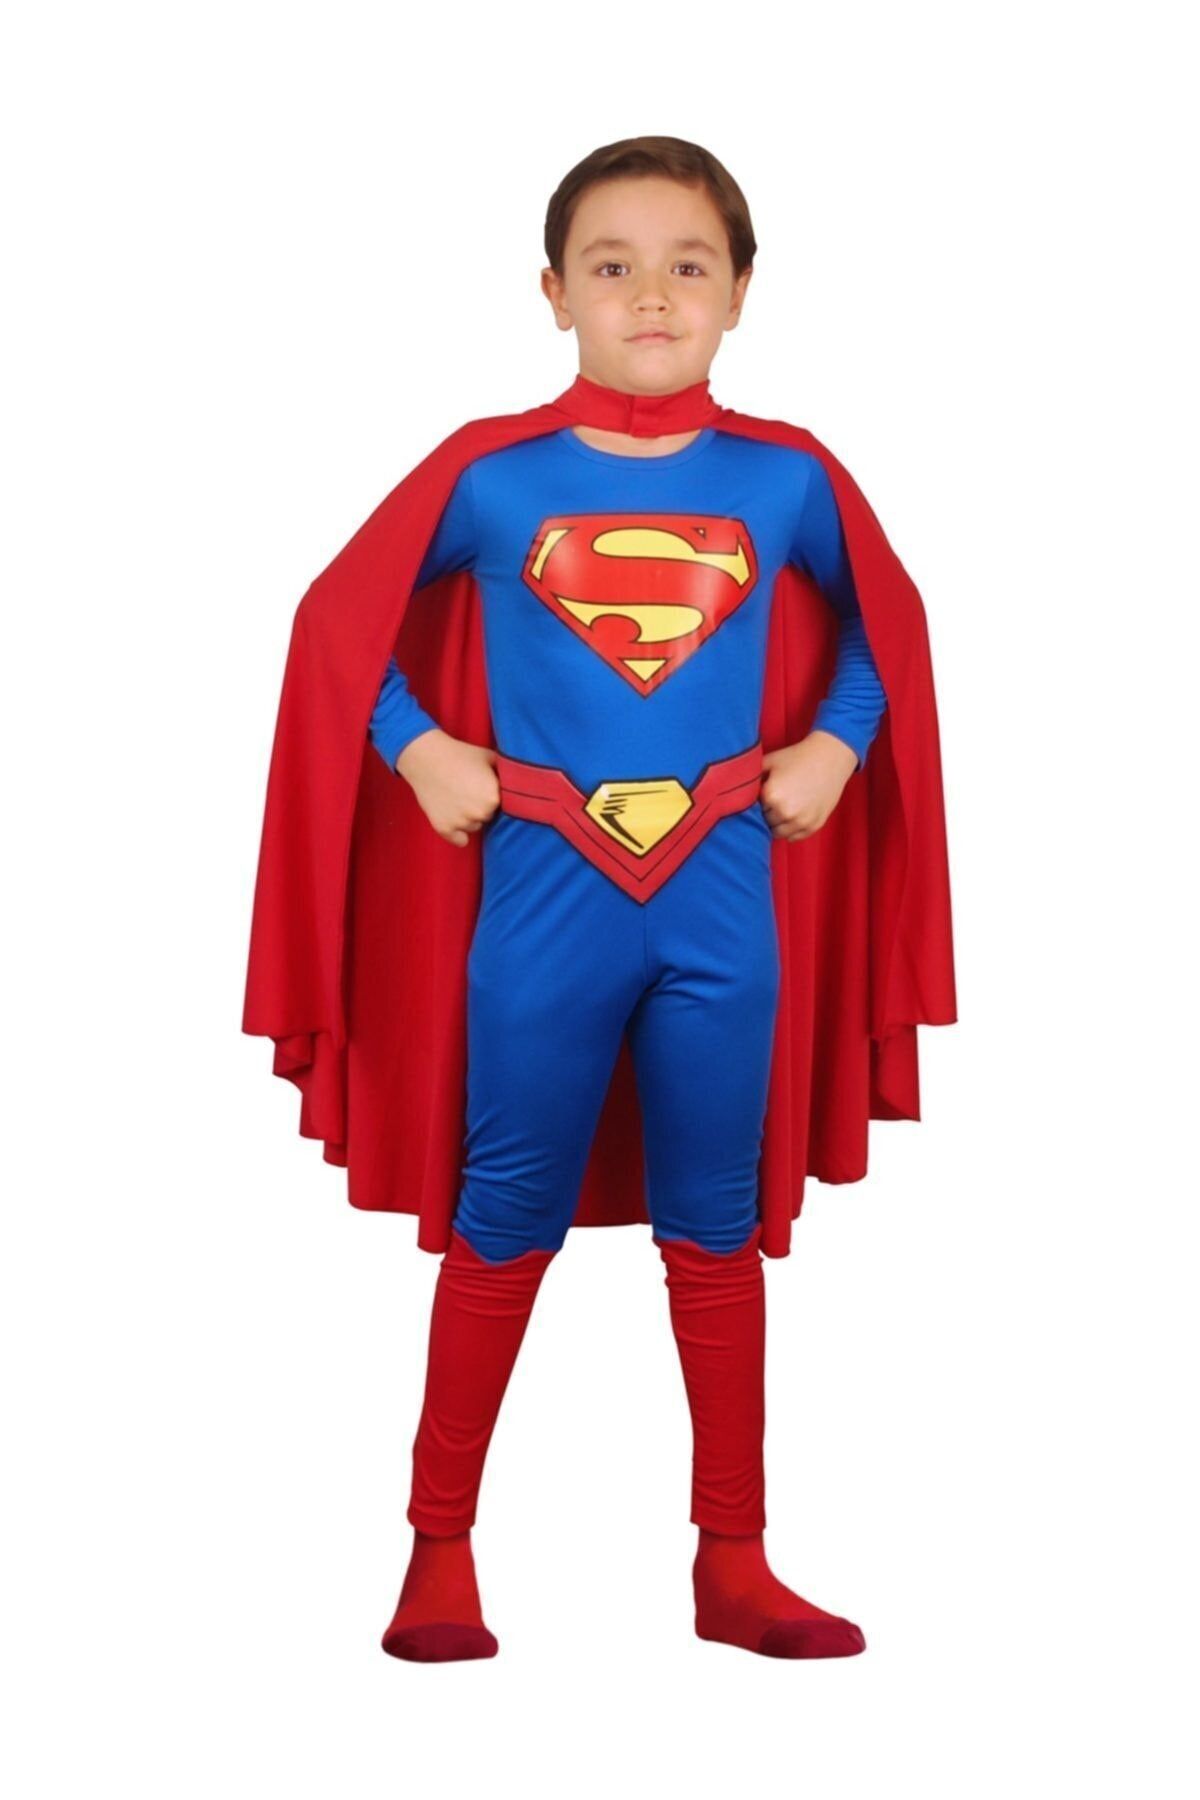 Liyavera Disney Orjinal Lisanslı Superman Kostümü - Süpermen Kostümü Çocuk Kıyafeti